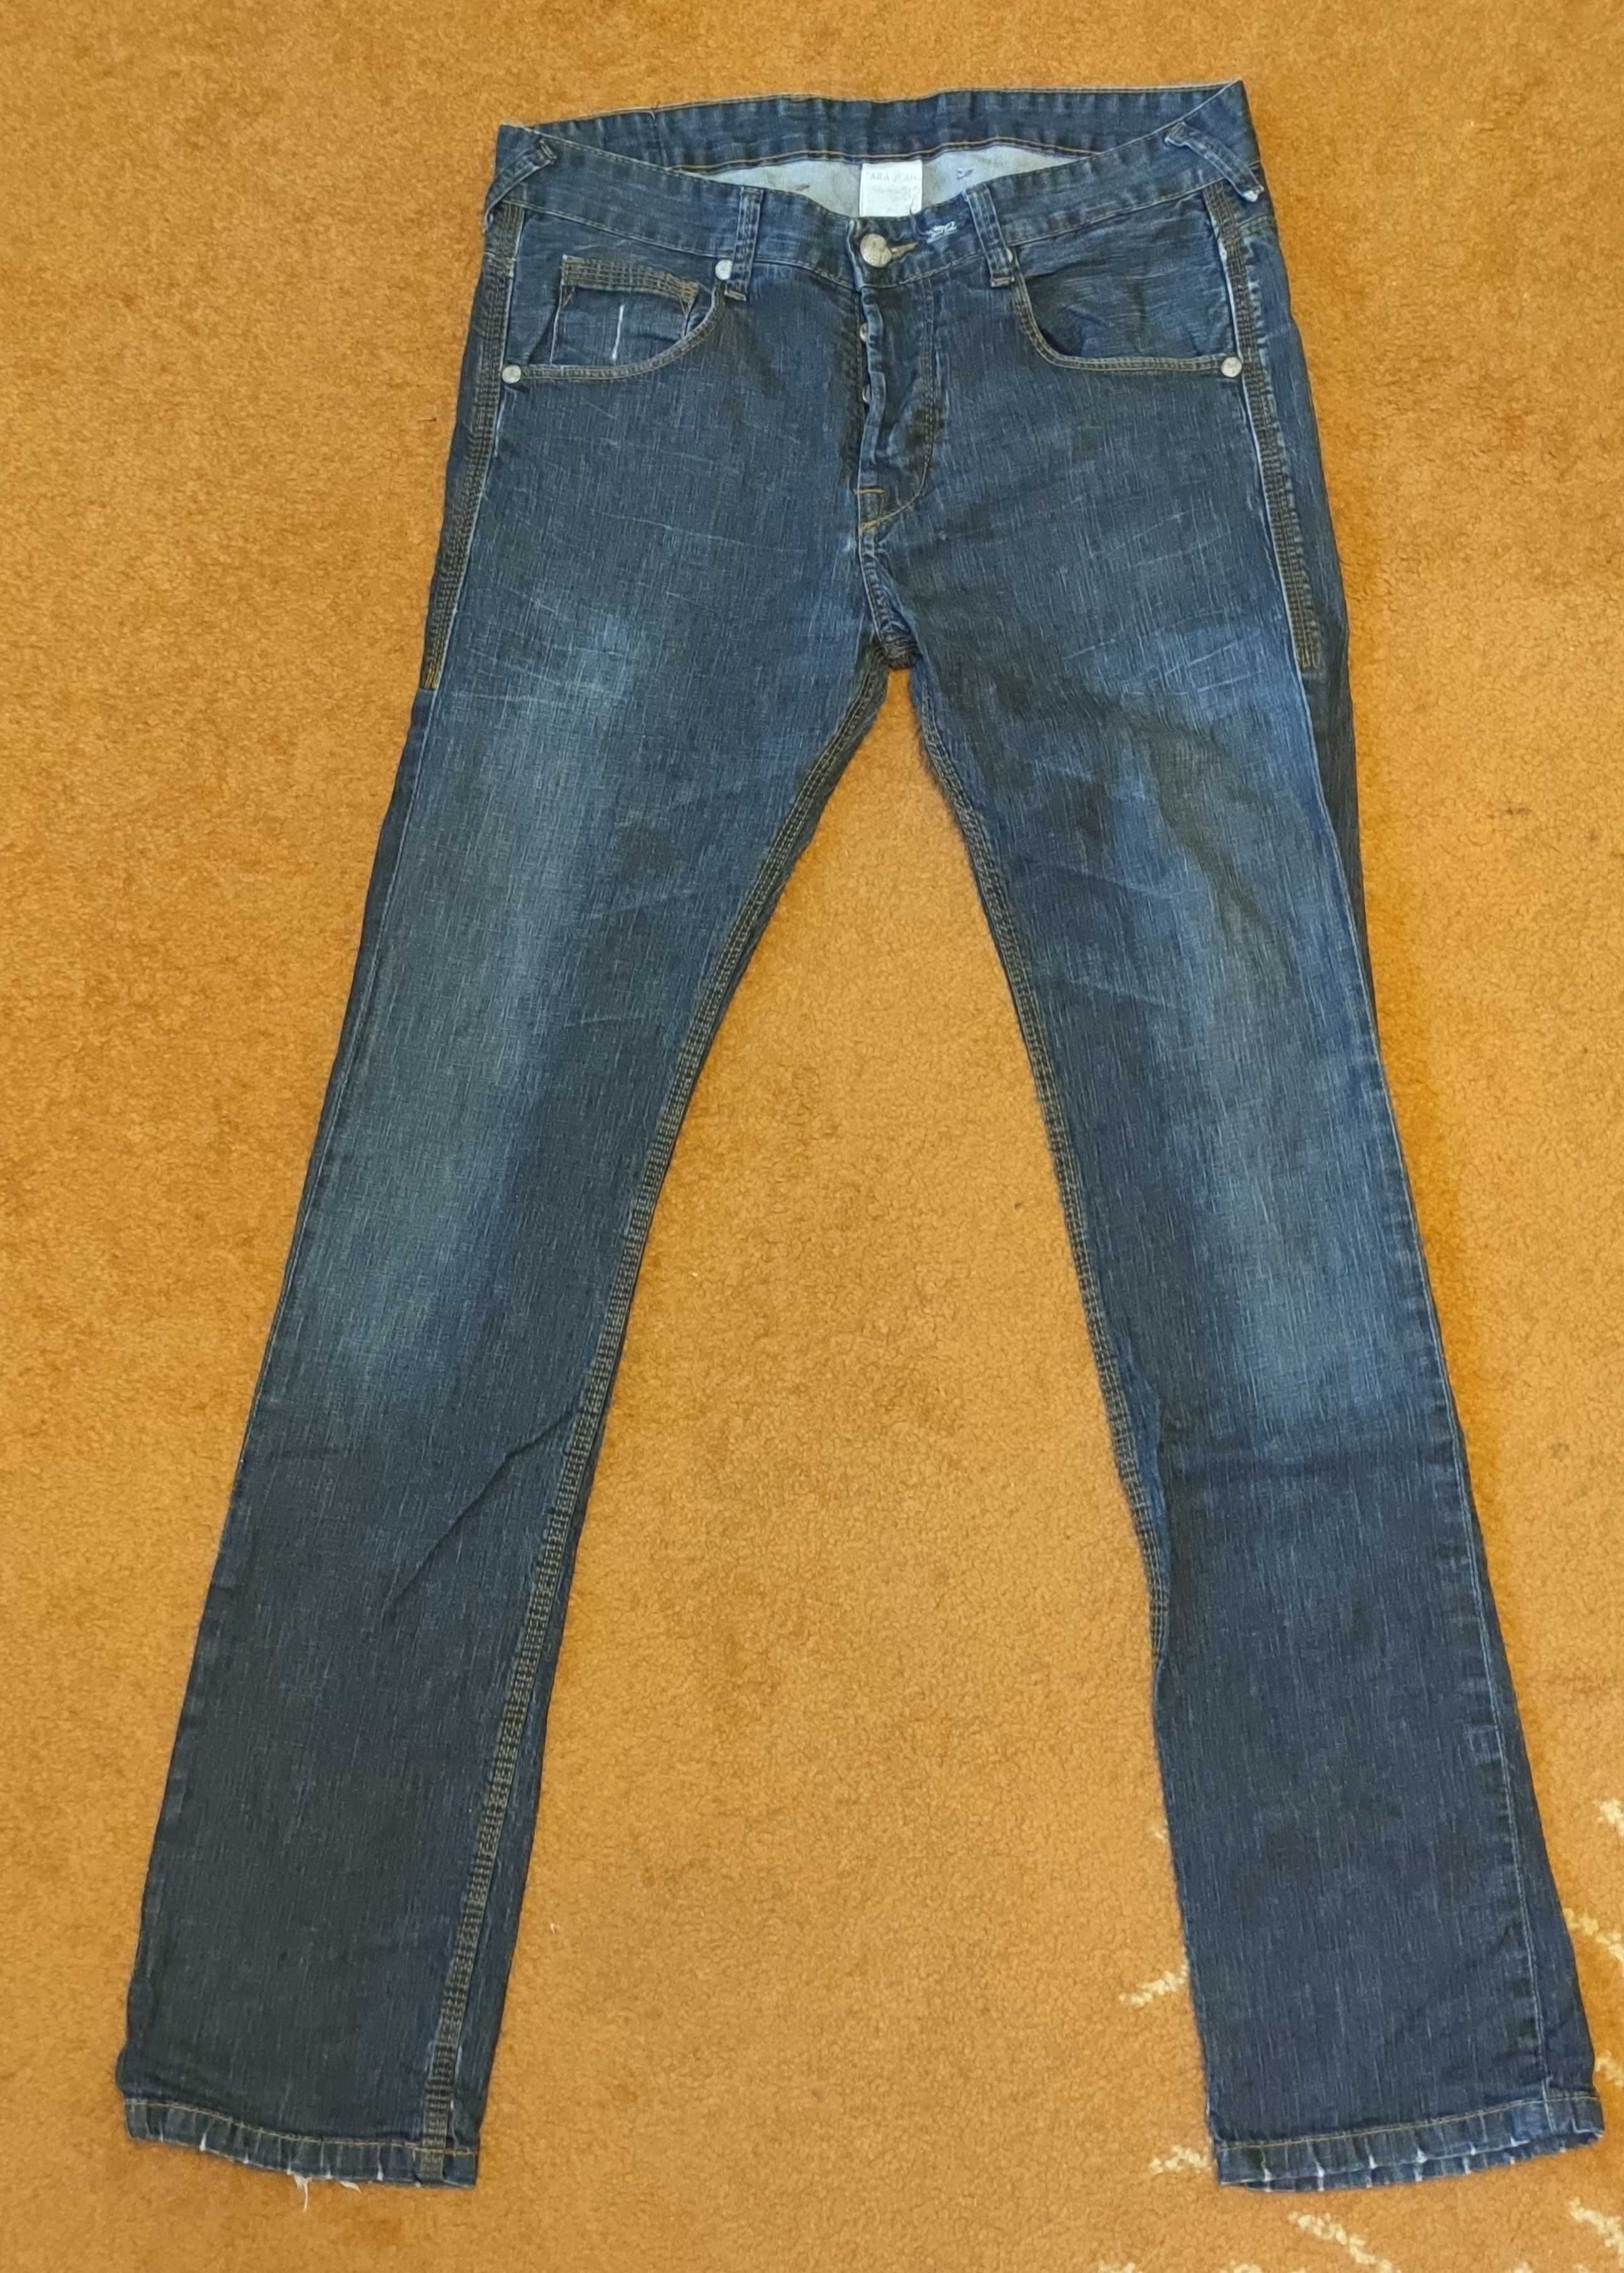 Spodnie, jeansy ZARA, Slim Fit, Skinny 32/32